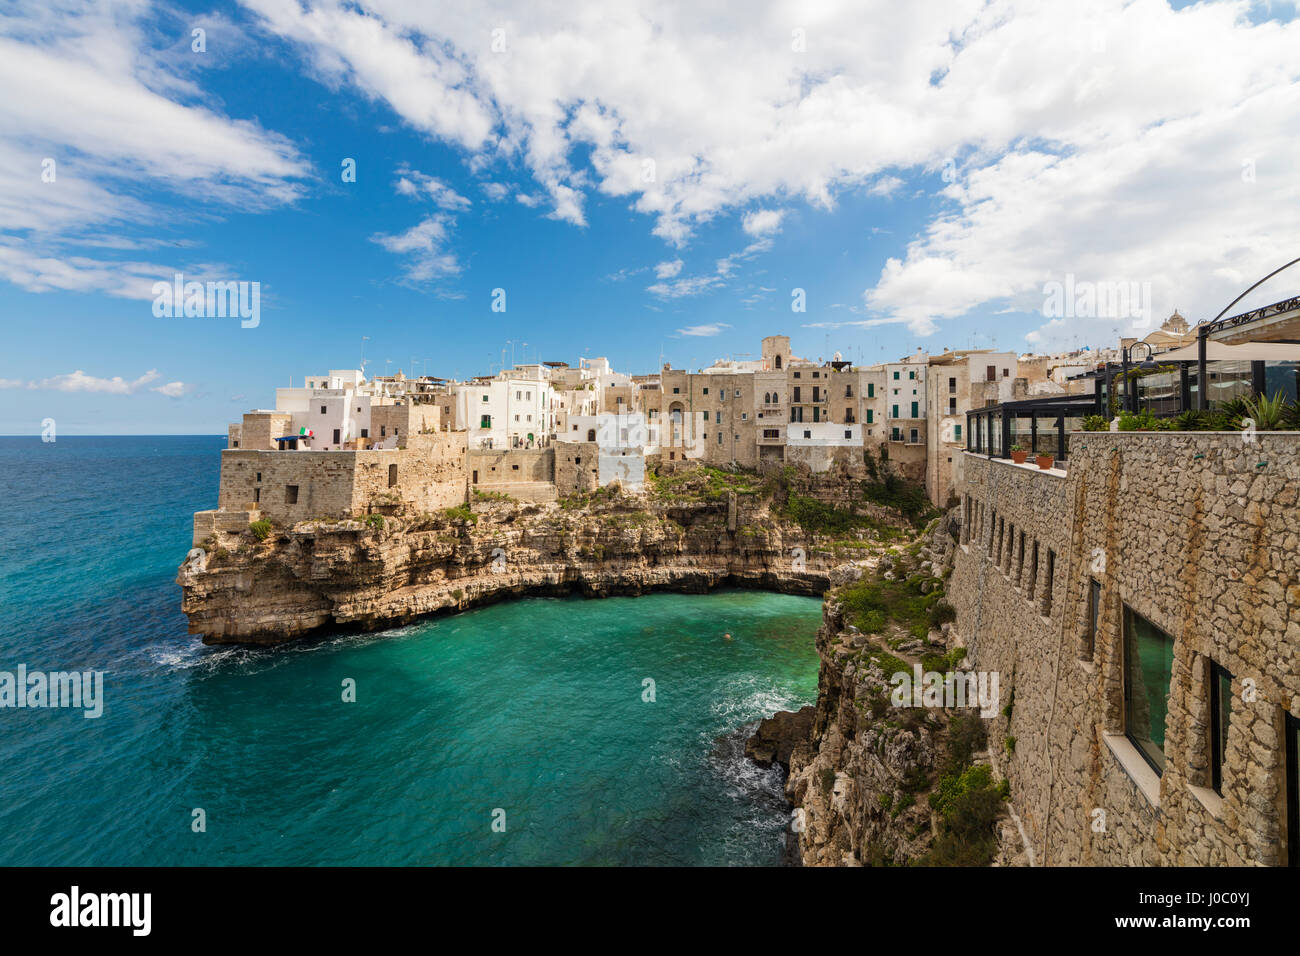 Mar turquesa enmarcado por la vieja ciudad encaramada sobre las rocas, en Polignano a Mare, Provincia de Bari, Puglia, Italia Foto de stock